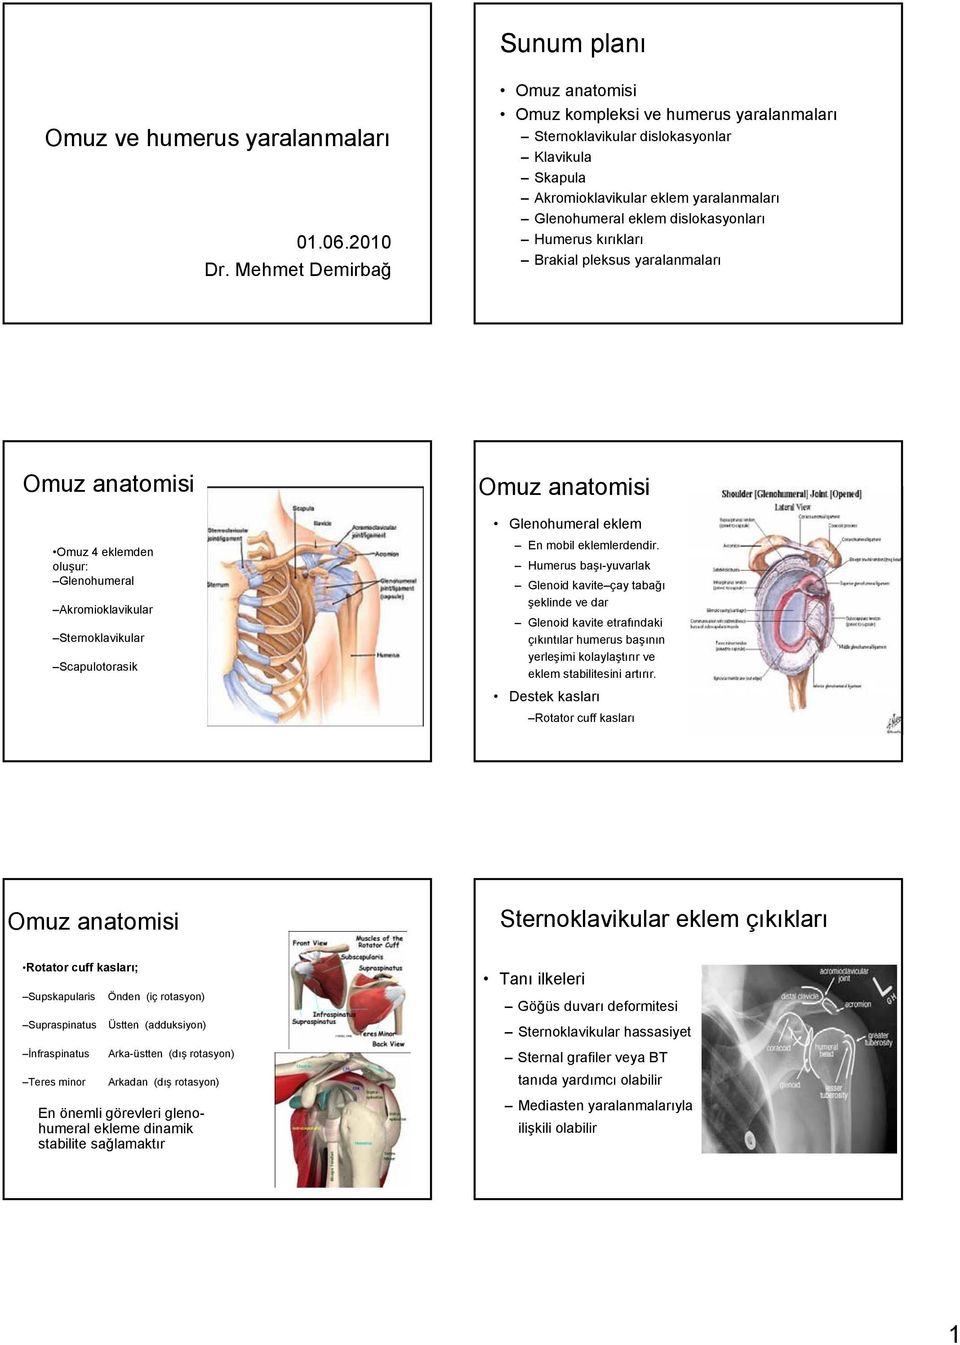 Brakial pleksus yaralanmaları Omuz anatomisi Omuz 4 eklemden oluşur: Glenohumeral Akromioklavikular Sternoklavikular Scapulotorasik Omuz anatomisi Glenohumeral eklem En mobil eklemlerdendir.